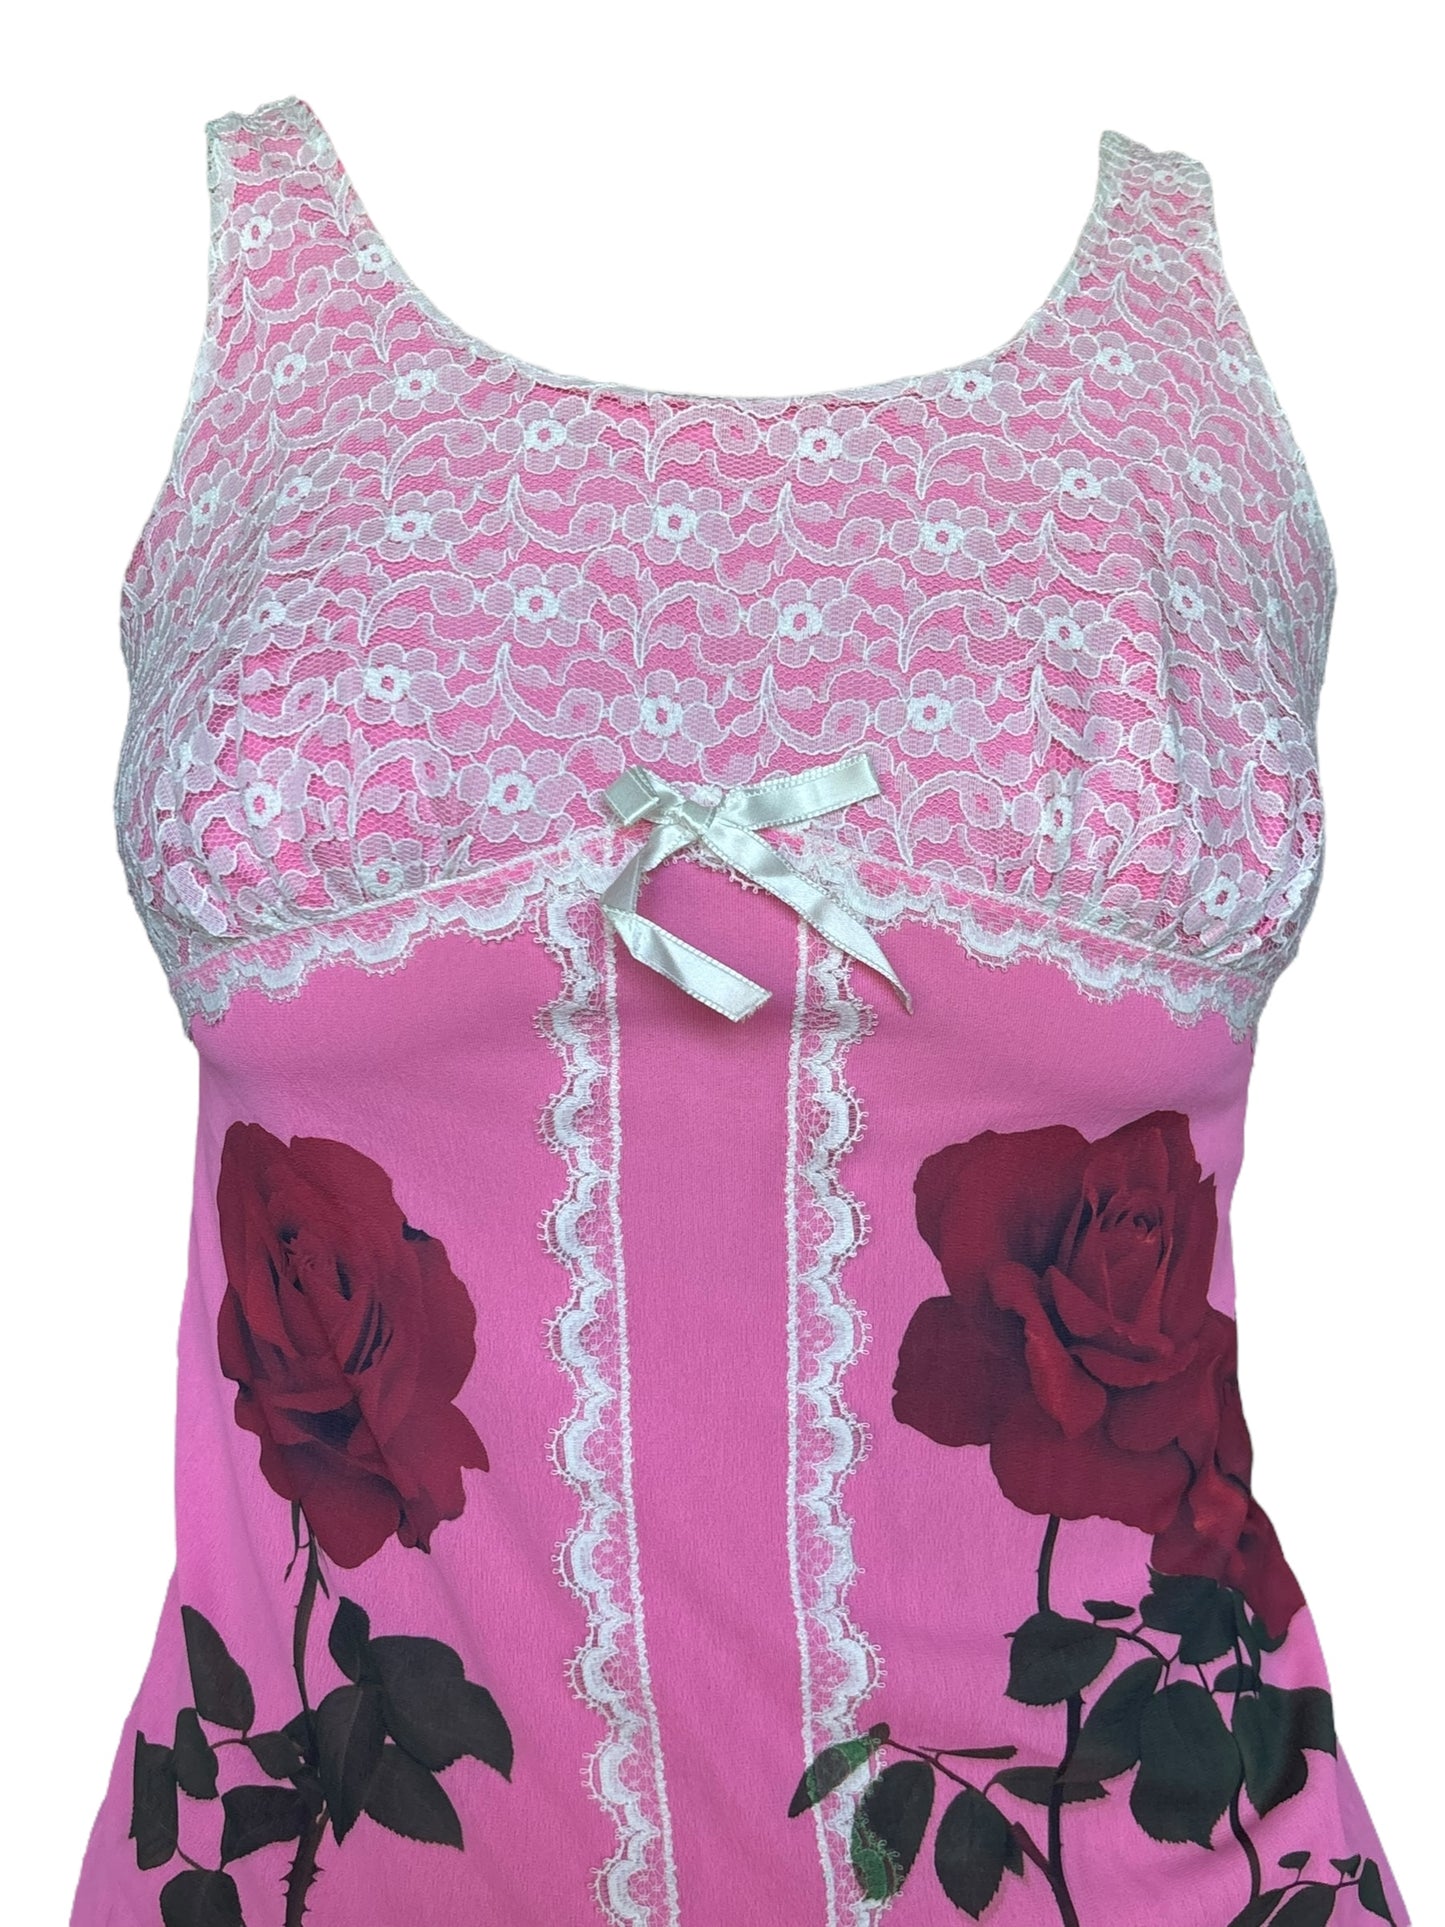 Rose's Thorn Pink Vintage Dress - M